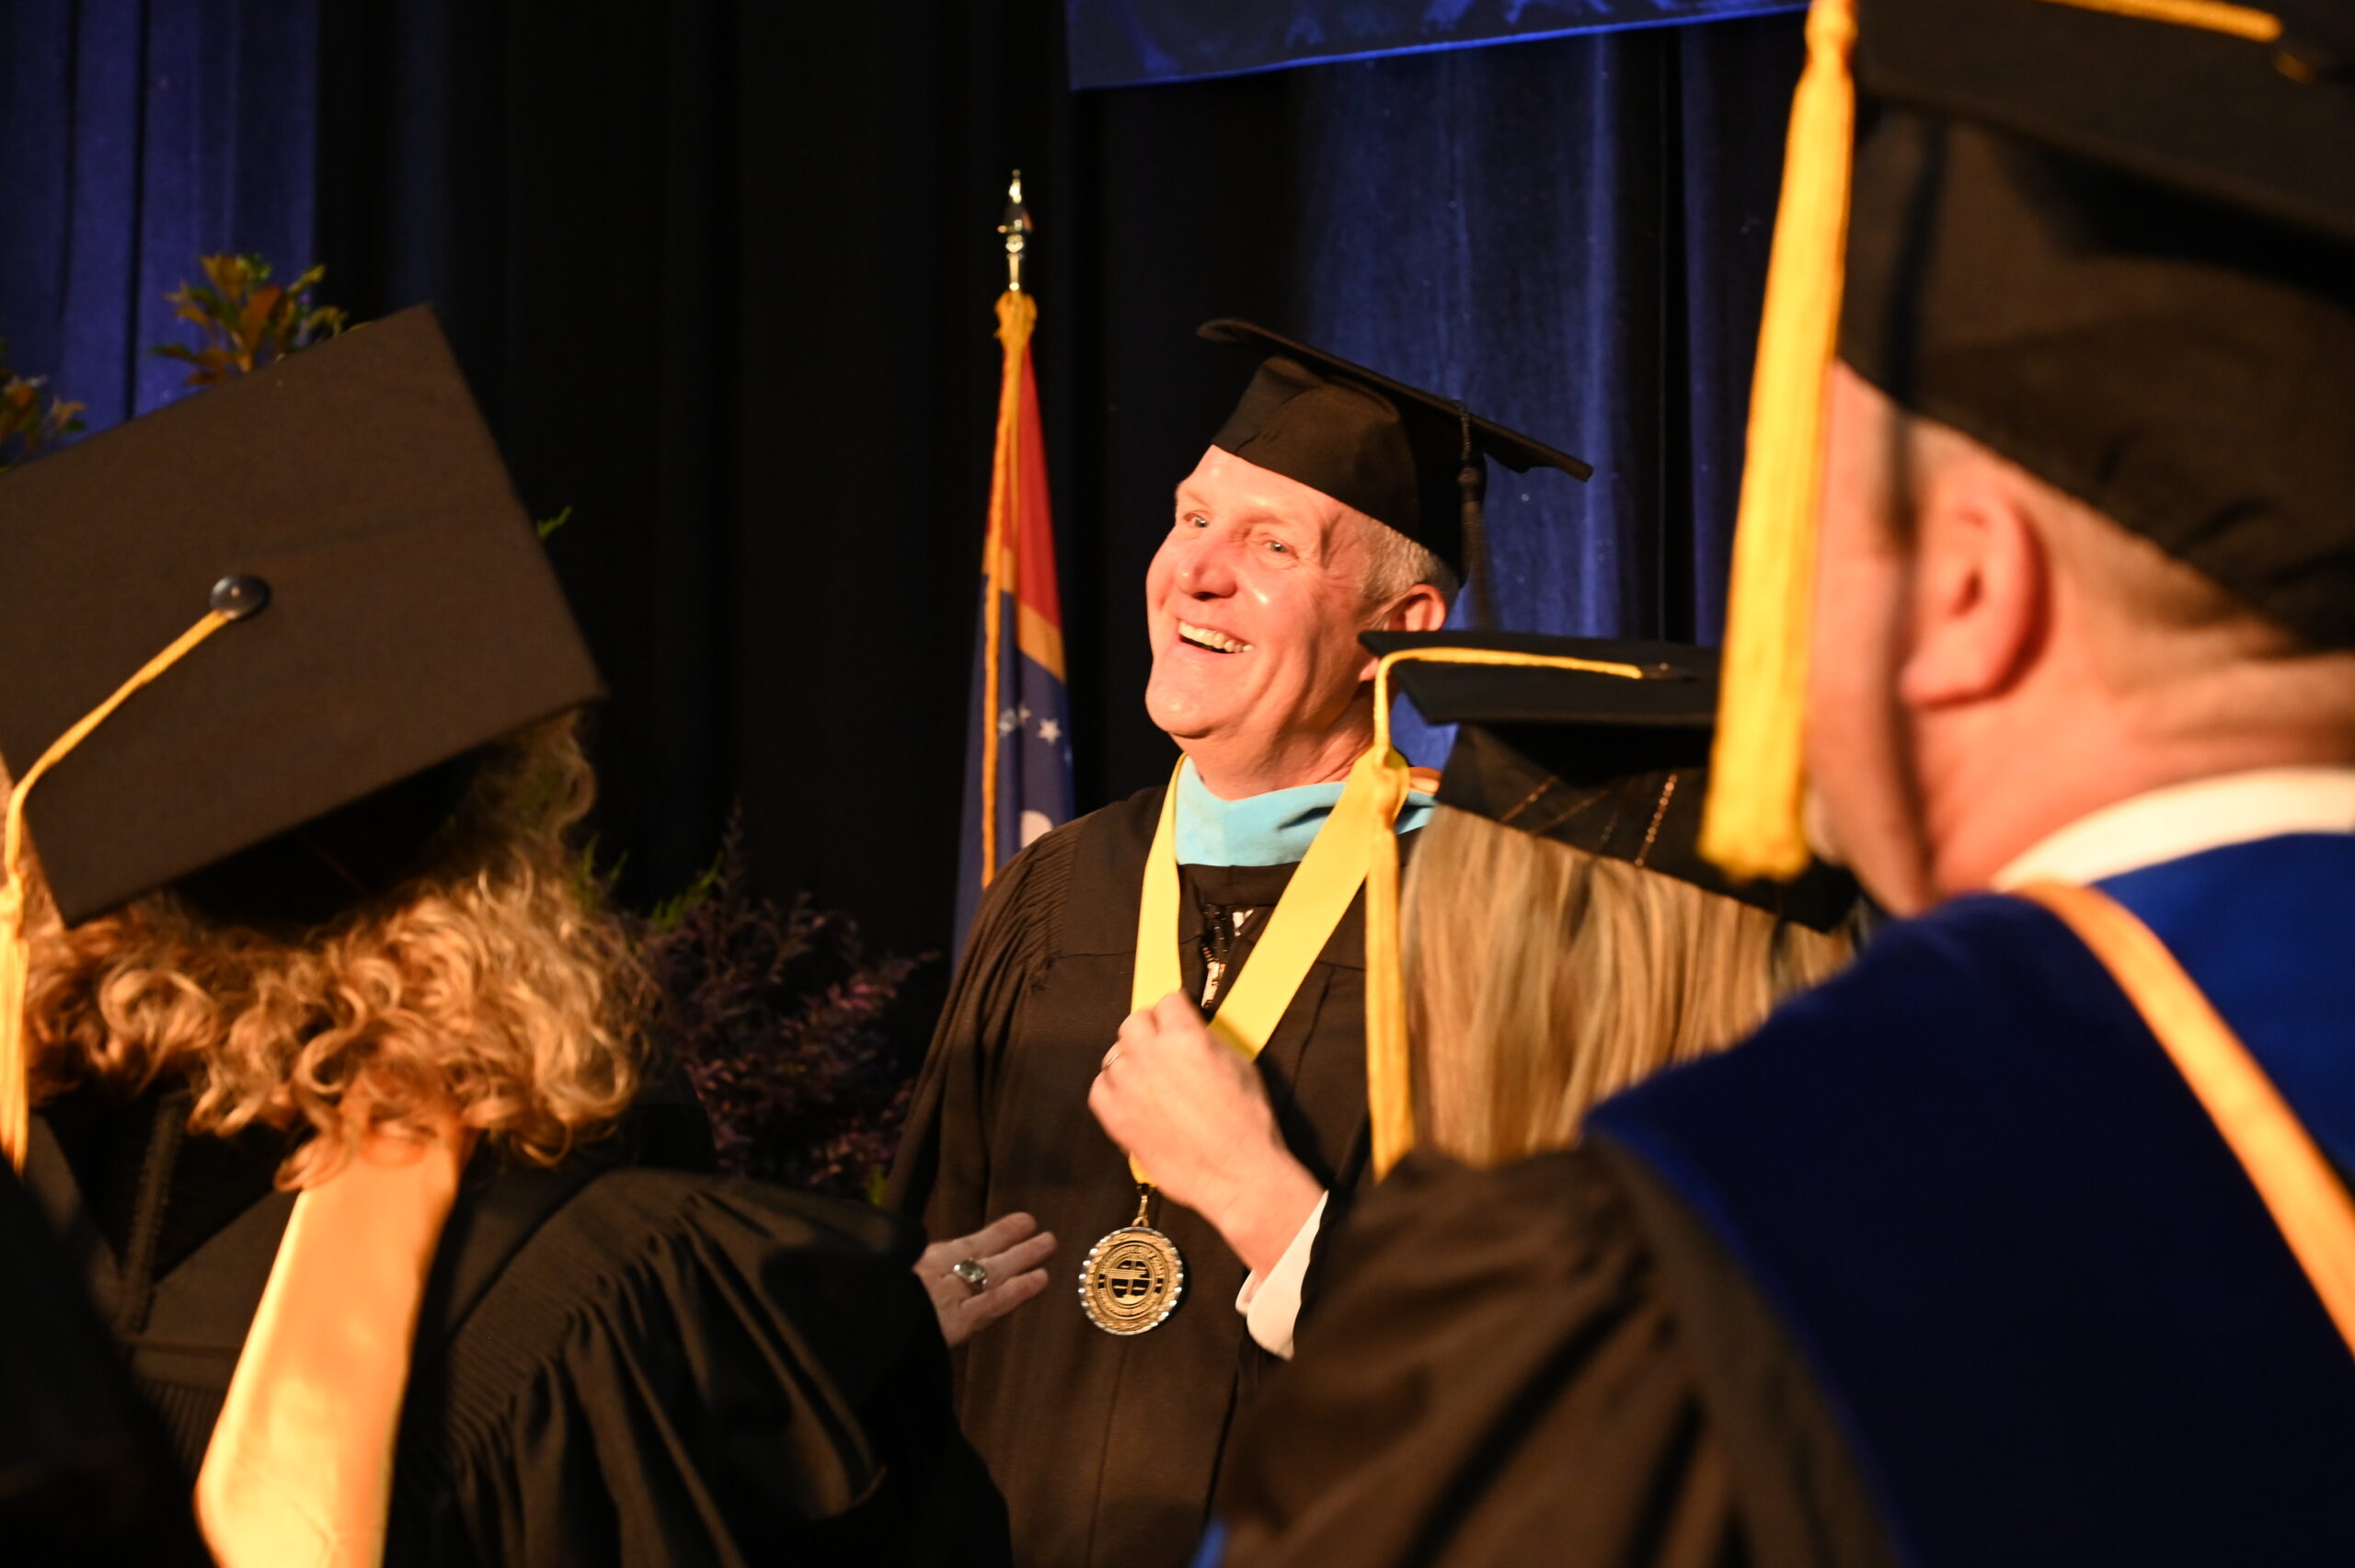 John Miller receiving his award at graduation